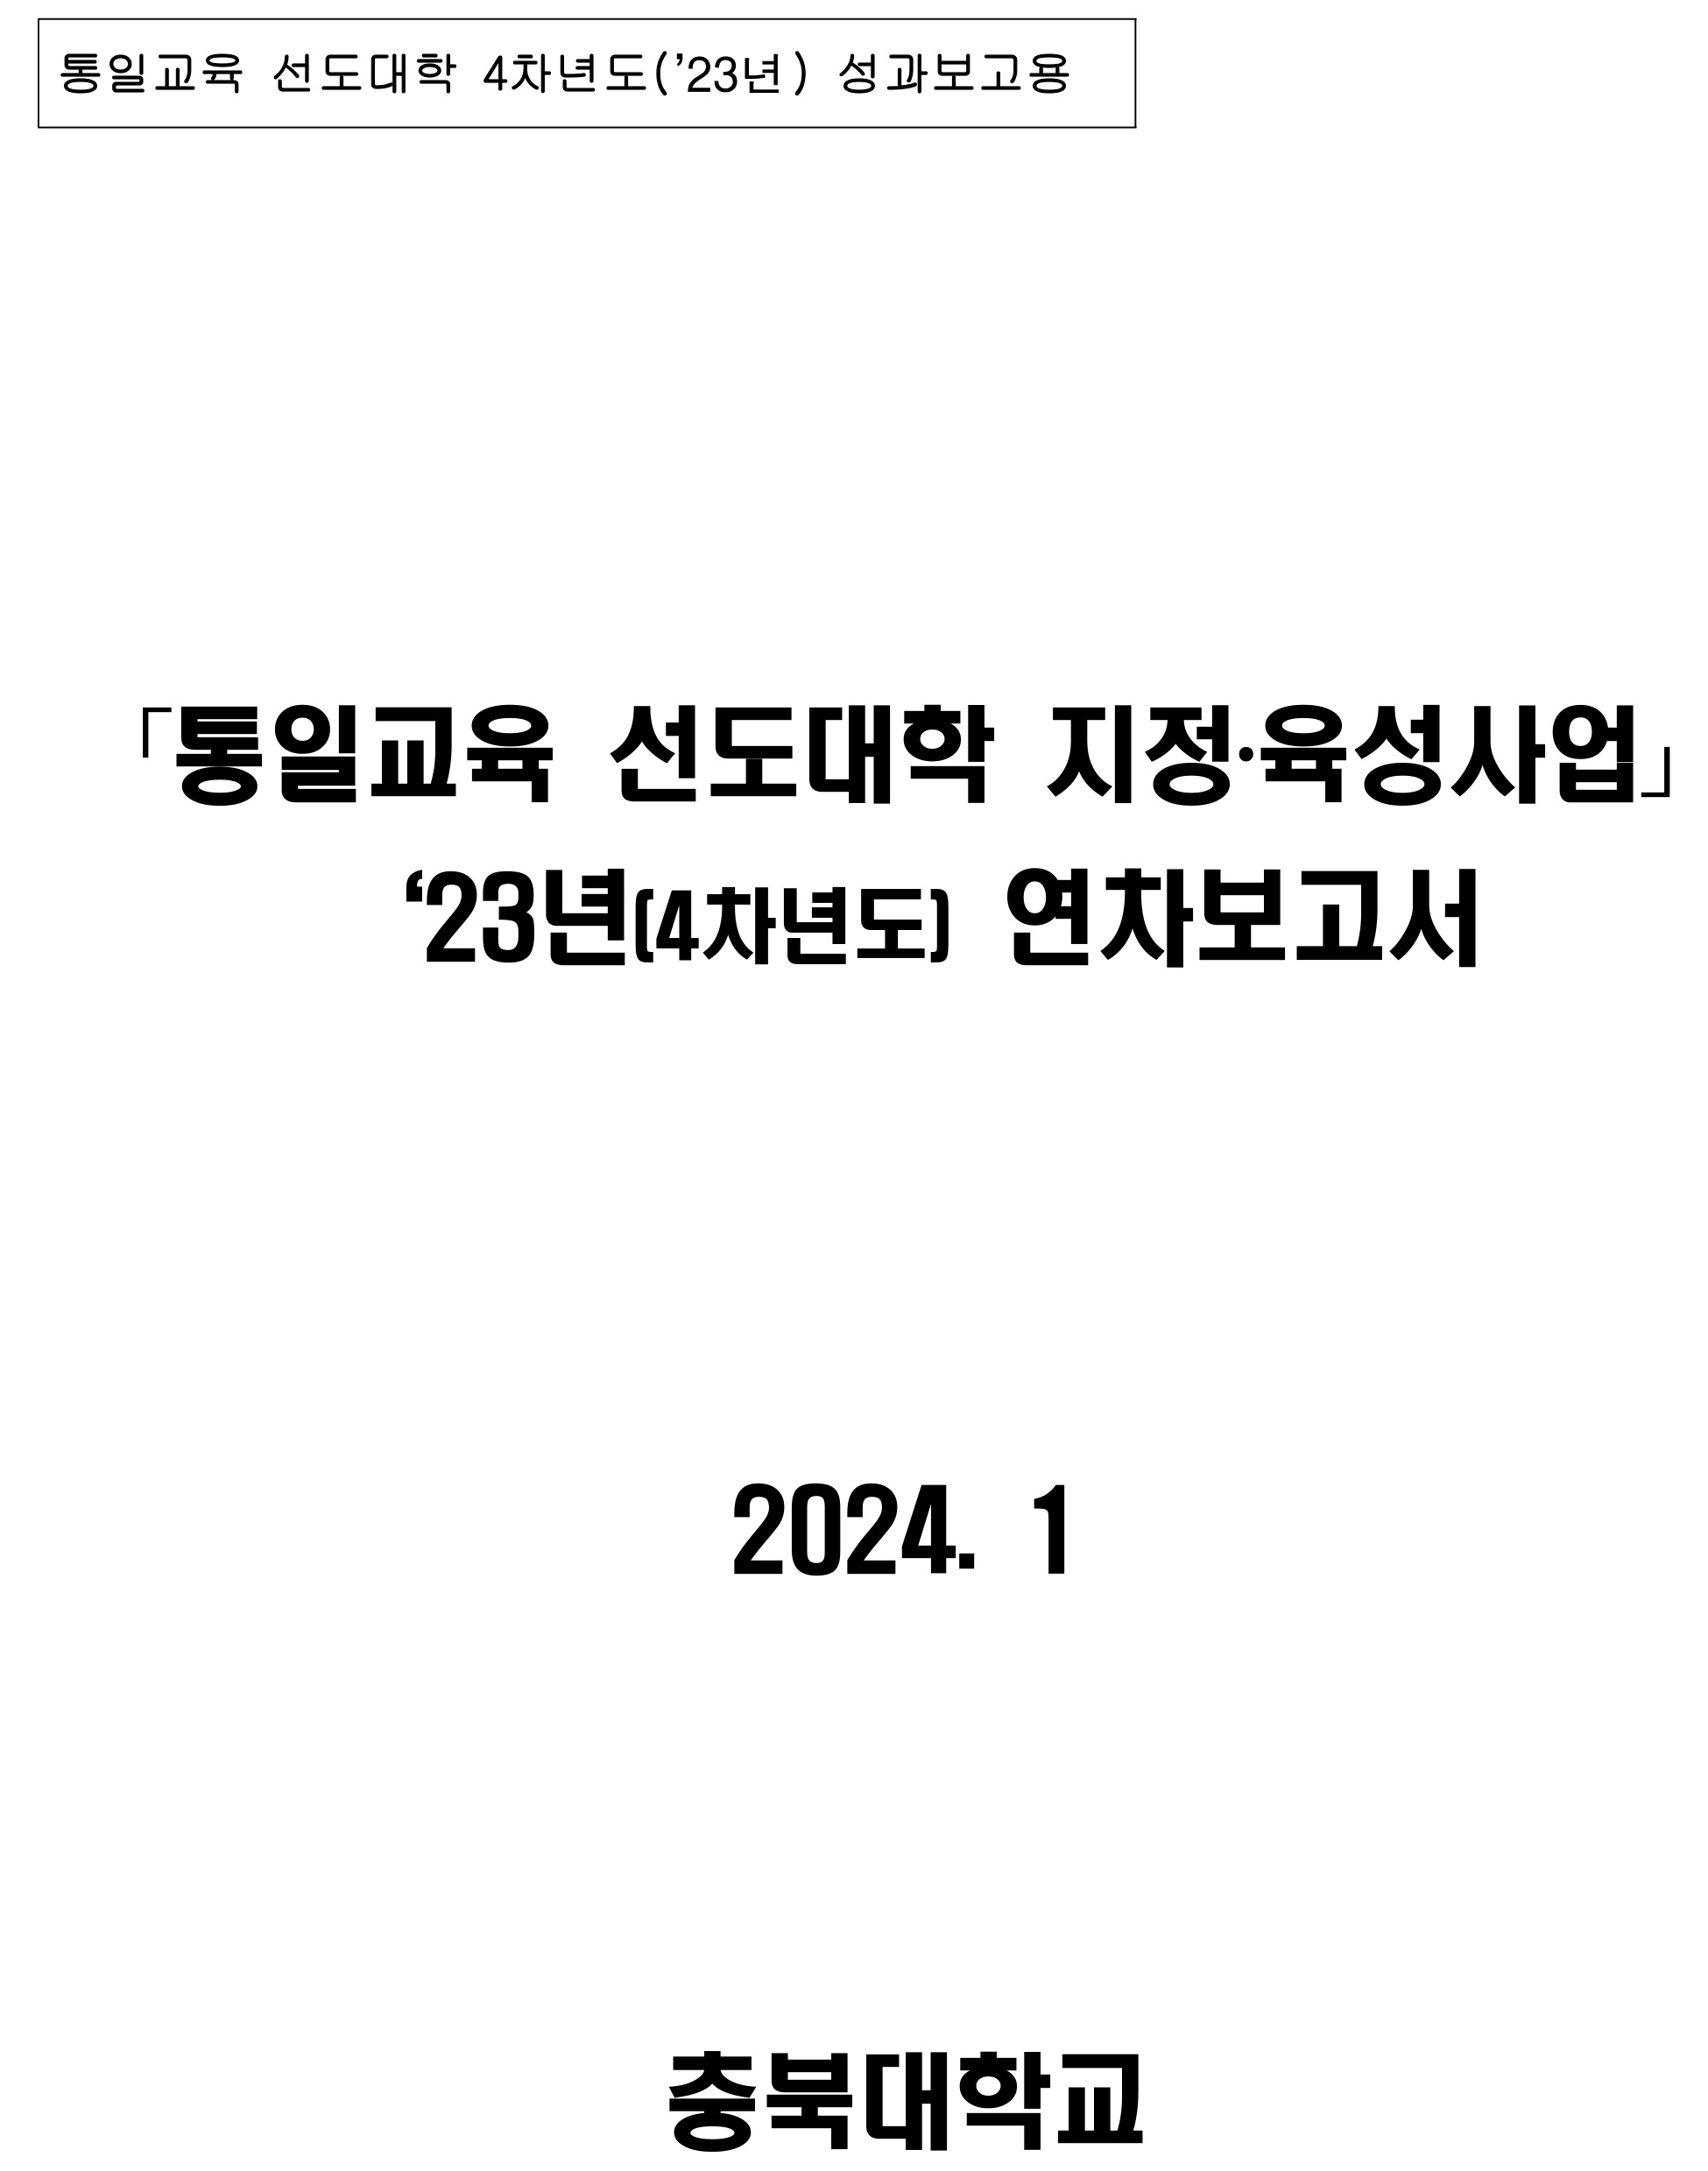 최신자료-통일교육 선도대학 2023년 성과보고서(충북대학교)